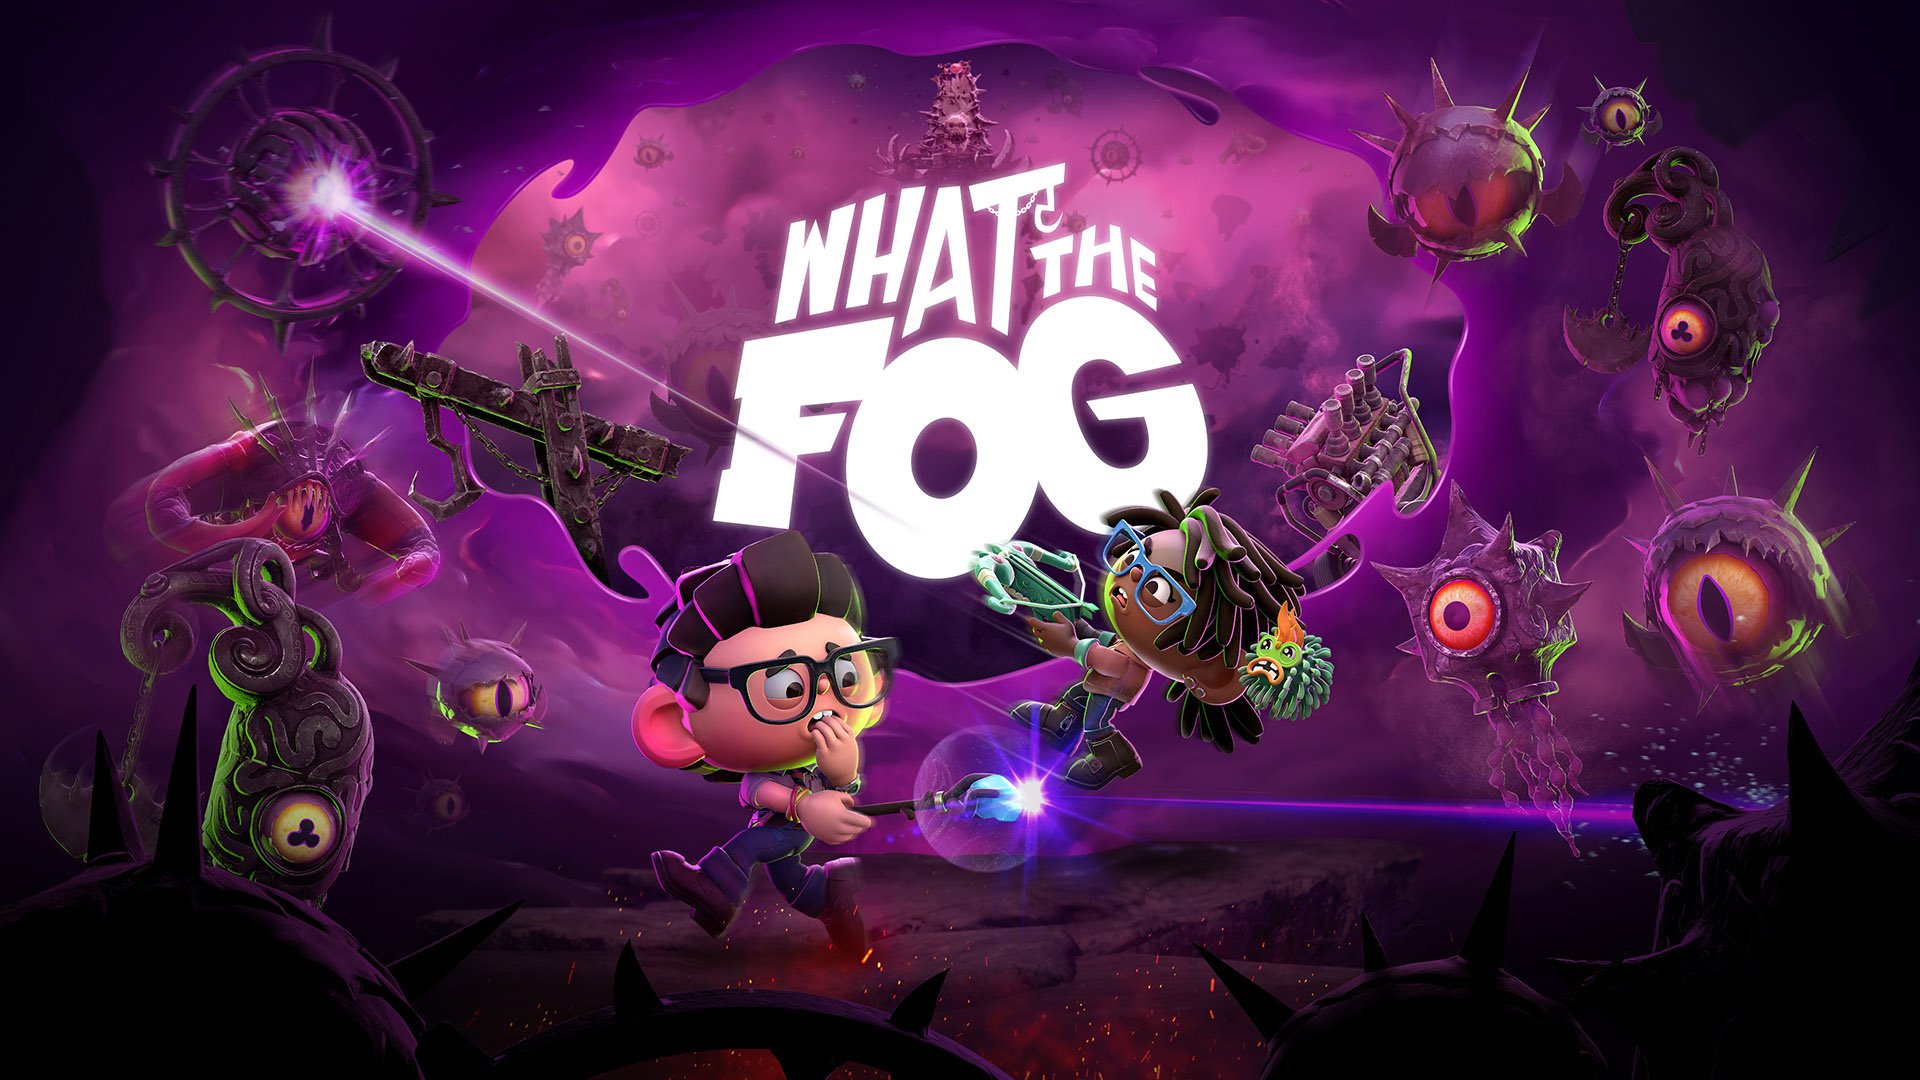 《黎明杀机》开发商惊喜推出衍生游戏《What the Fog》